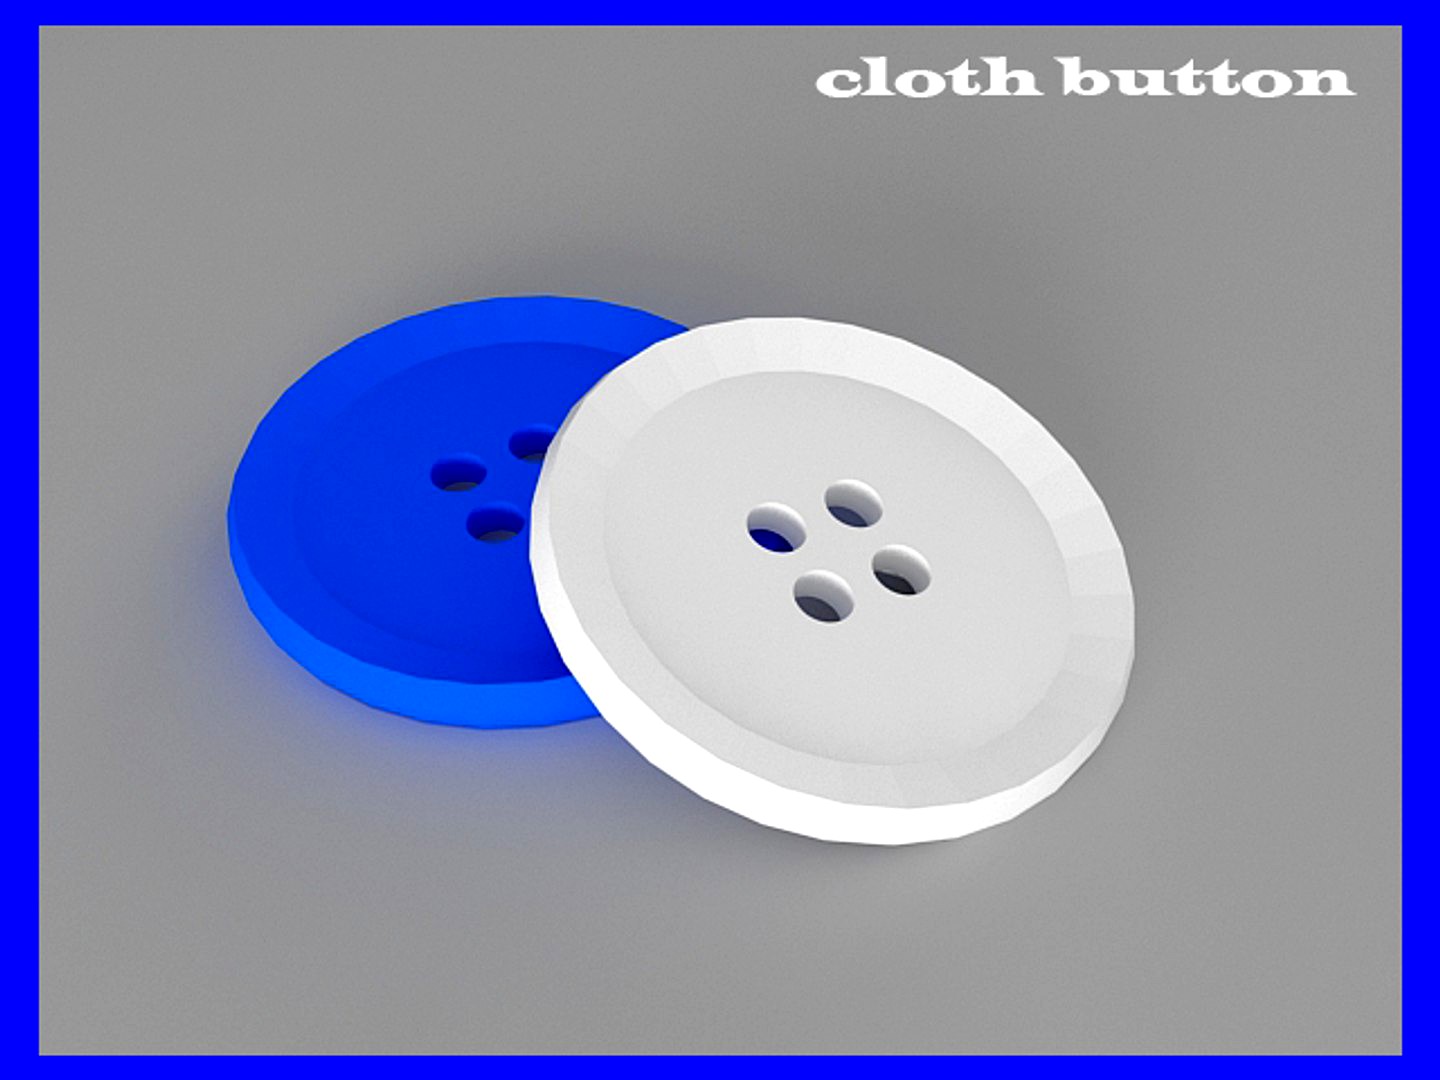 cloth button